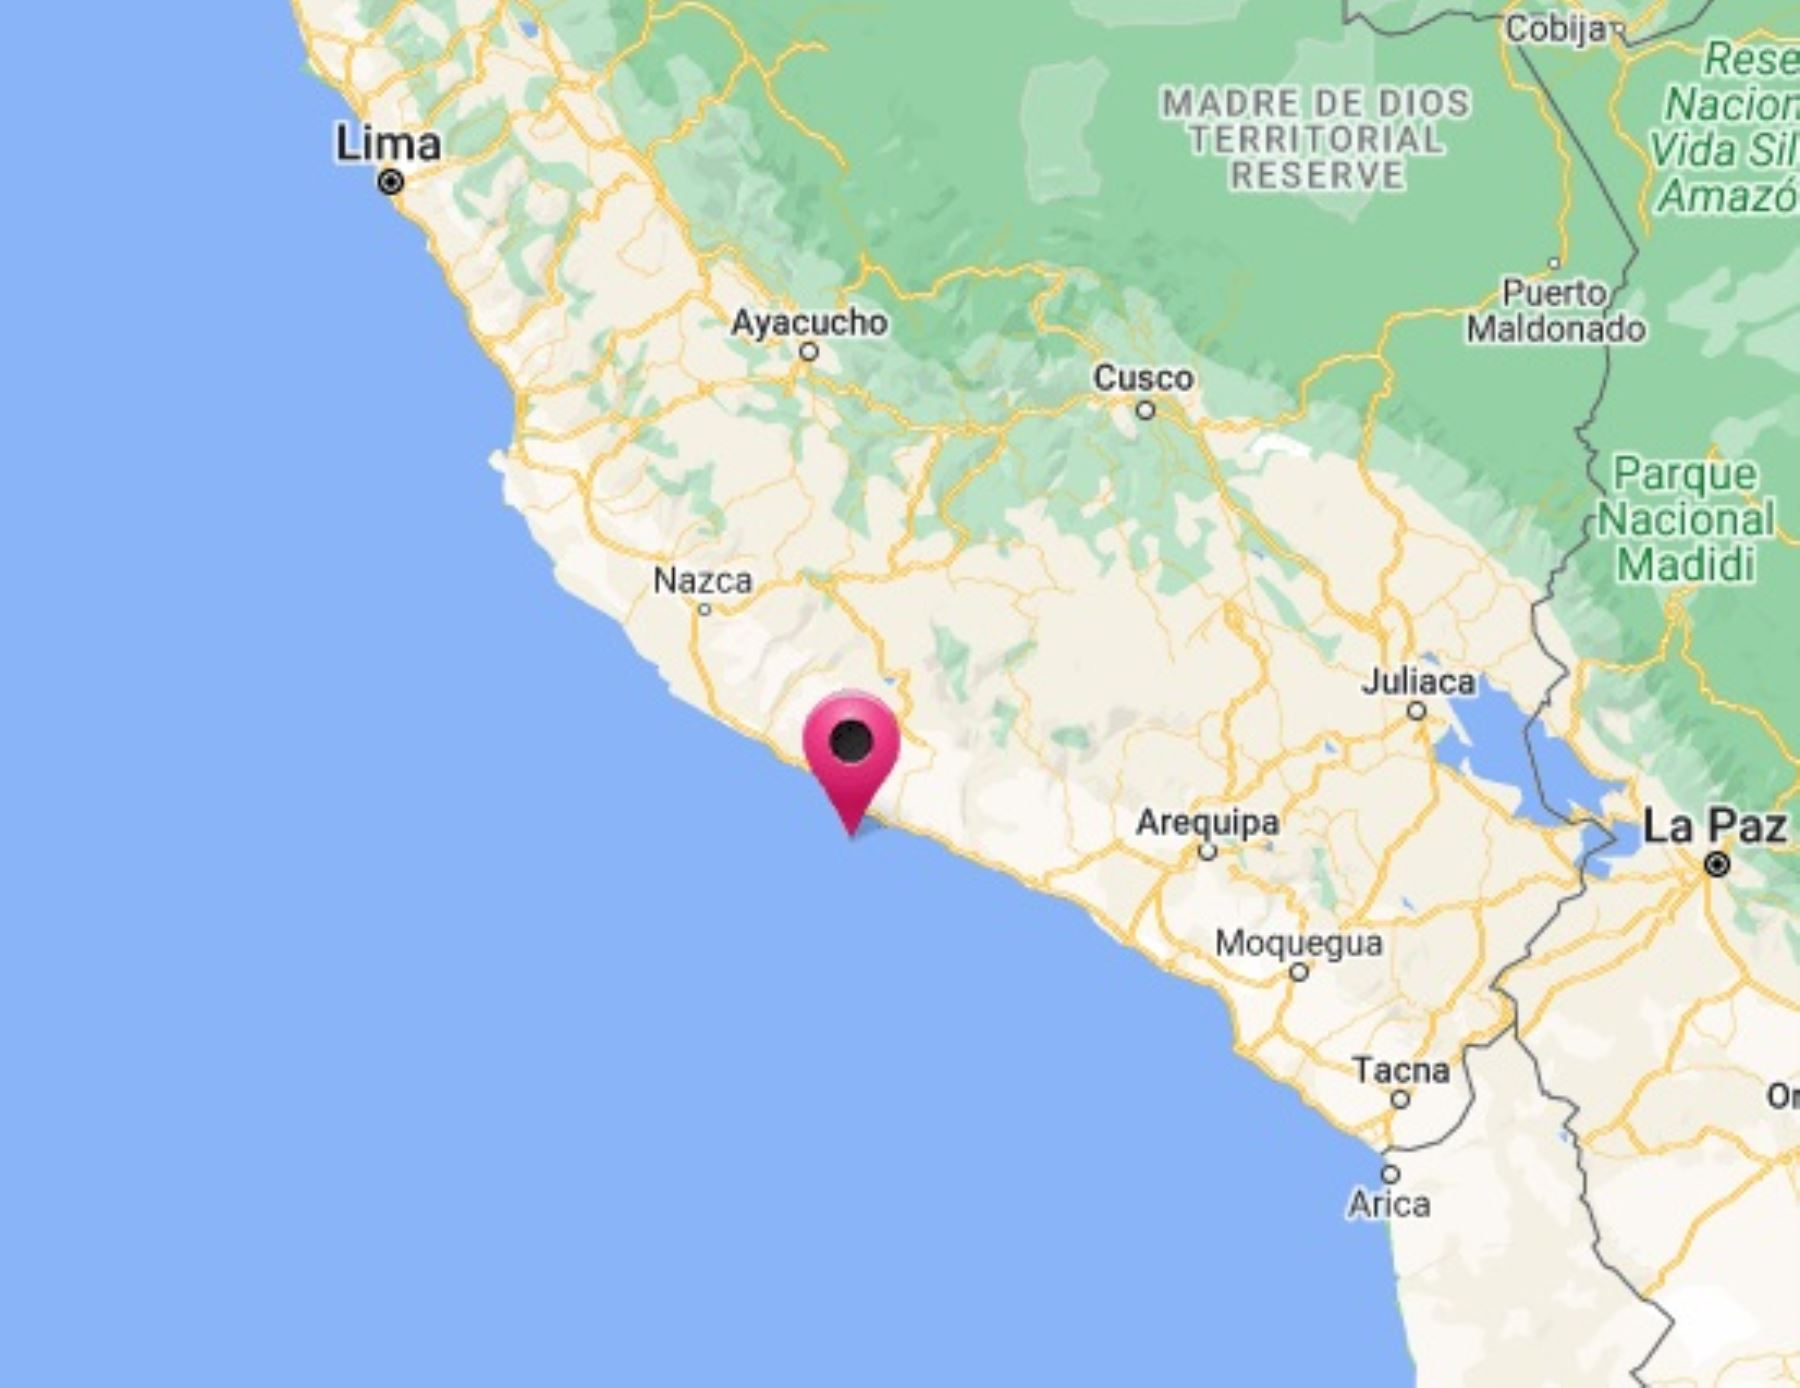 La localidad de Atico, región Arequipa, fue remecida hoy por dos sismos en menos de dos horas.